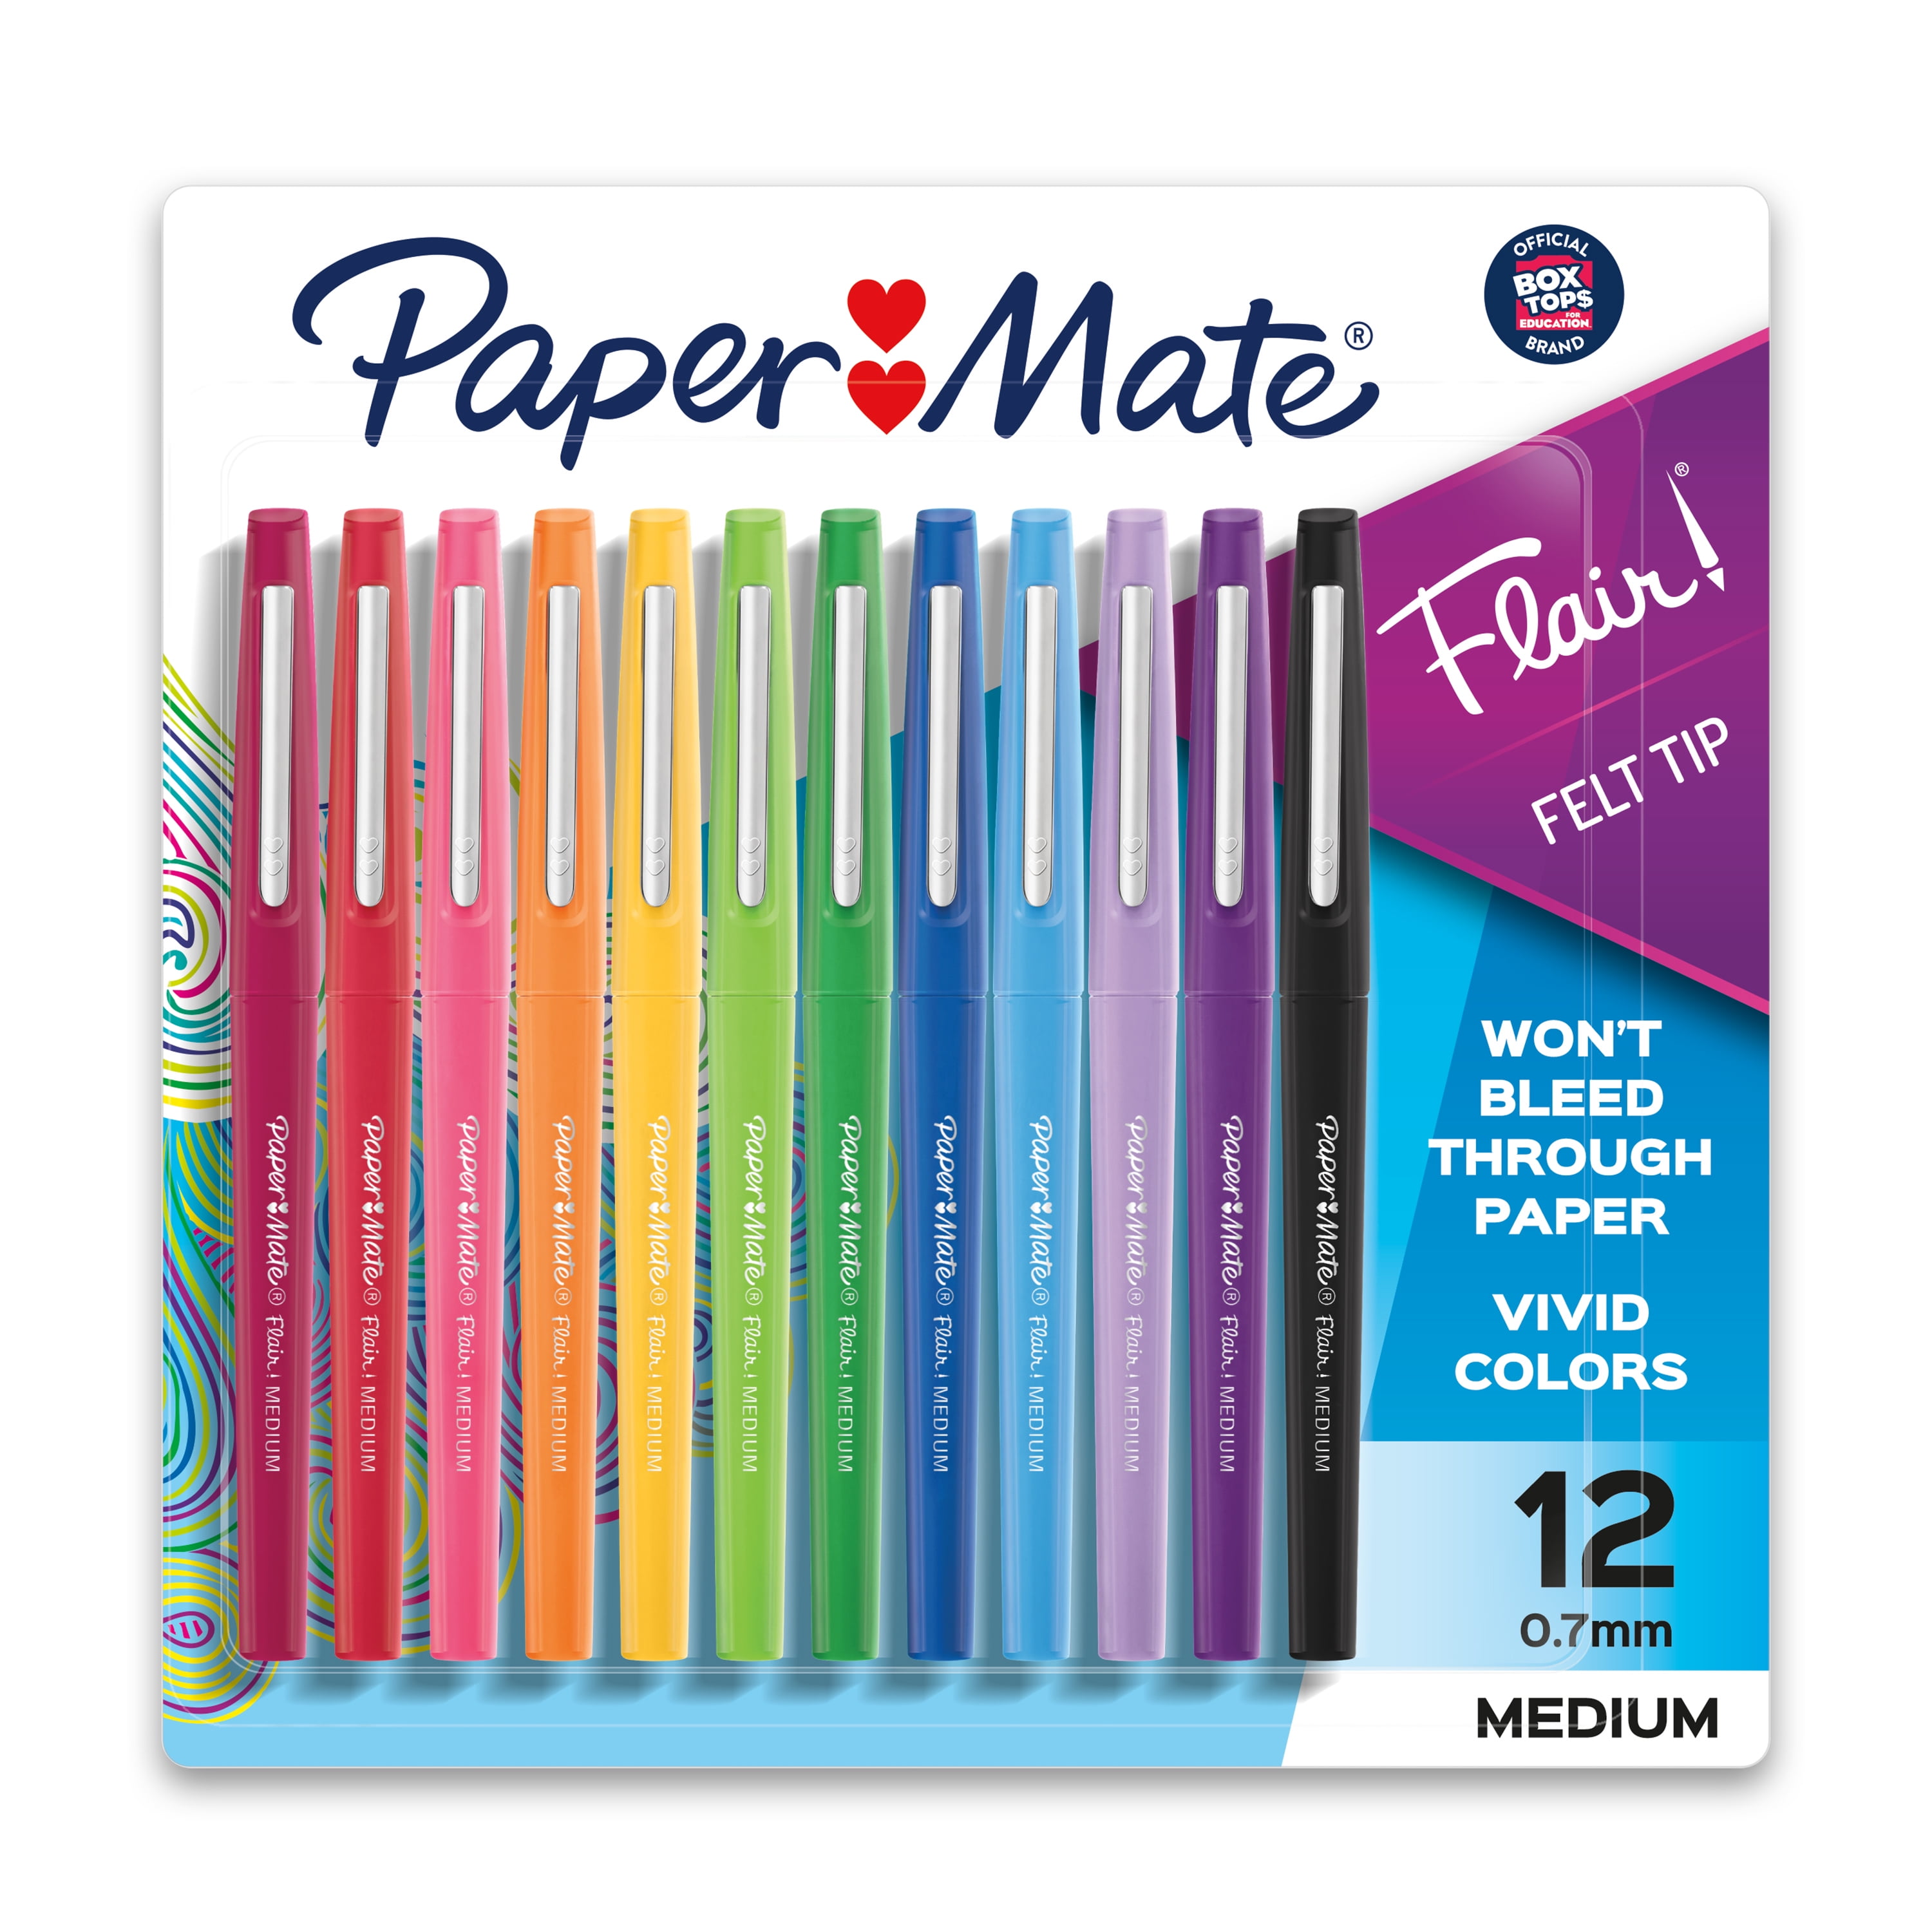 Feest Soepel AIDS Paper Mate Flair Felt Tip Pen Set, 0.7mm, 12 Count - Walmart.com